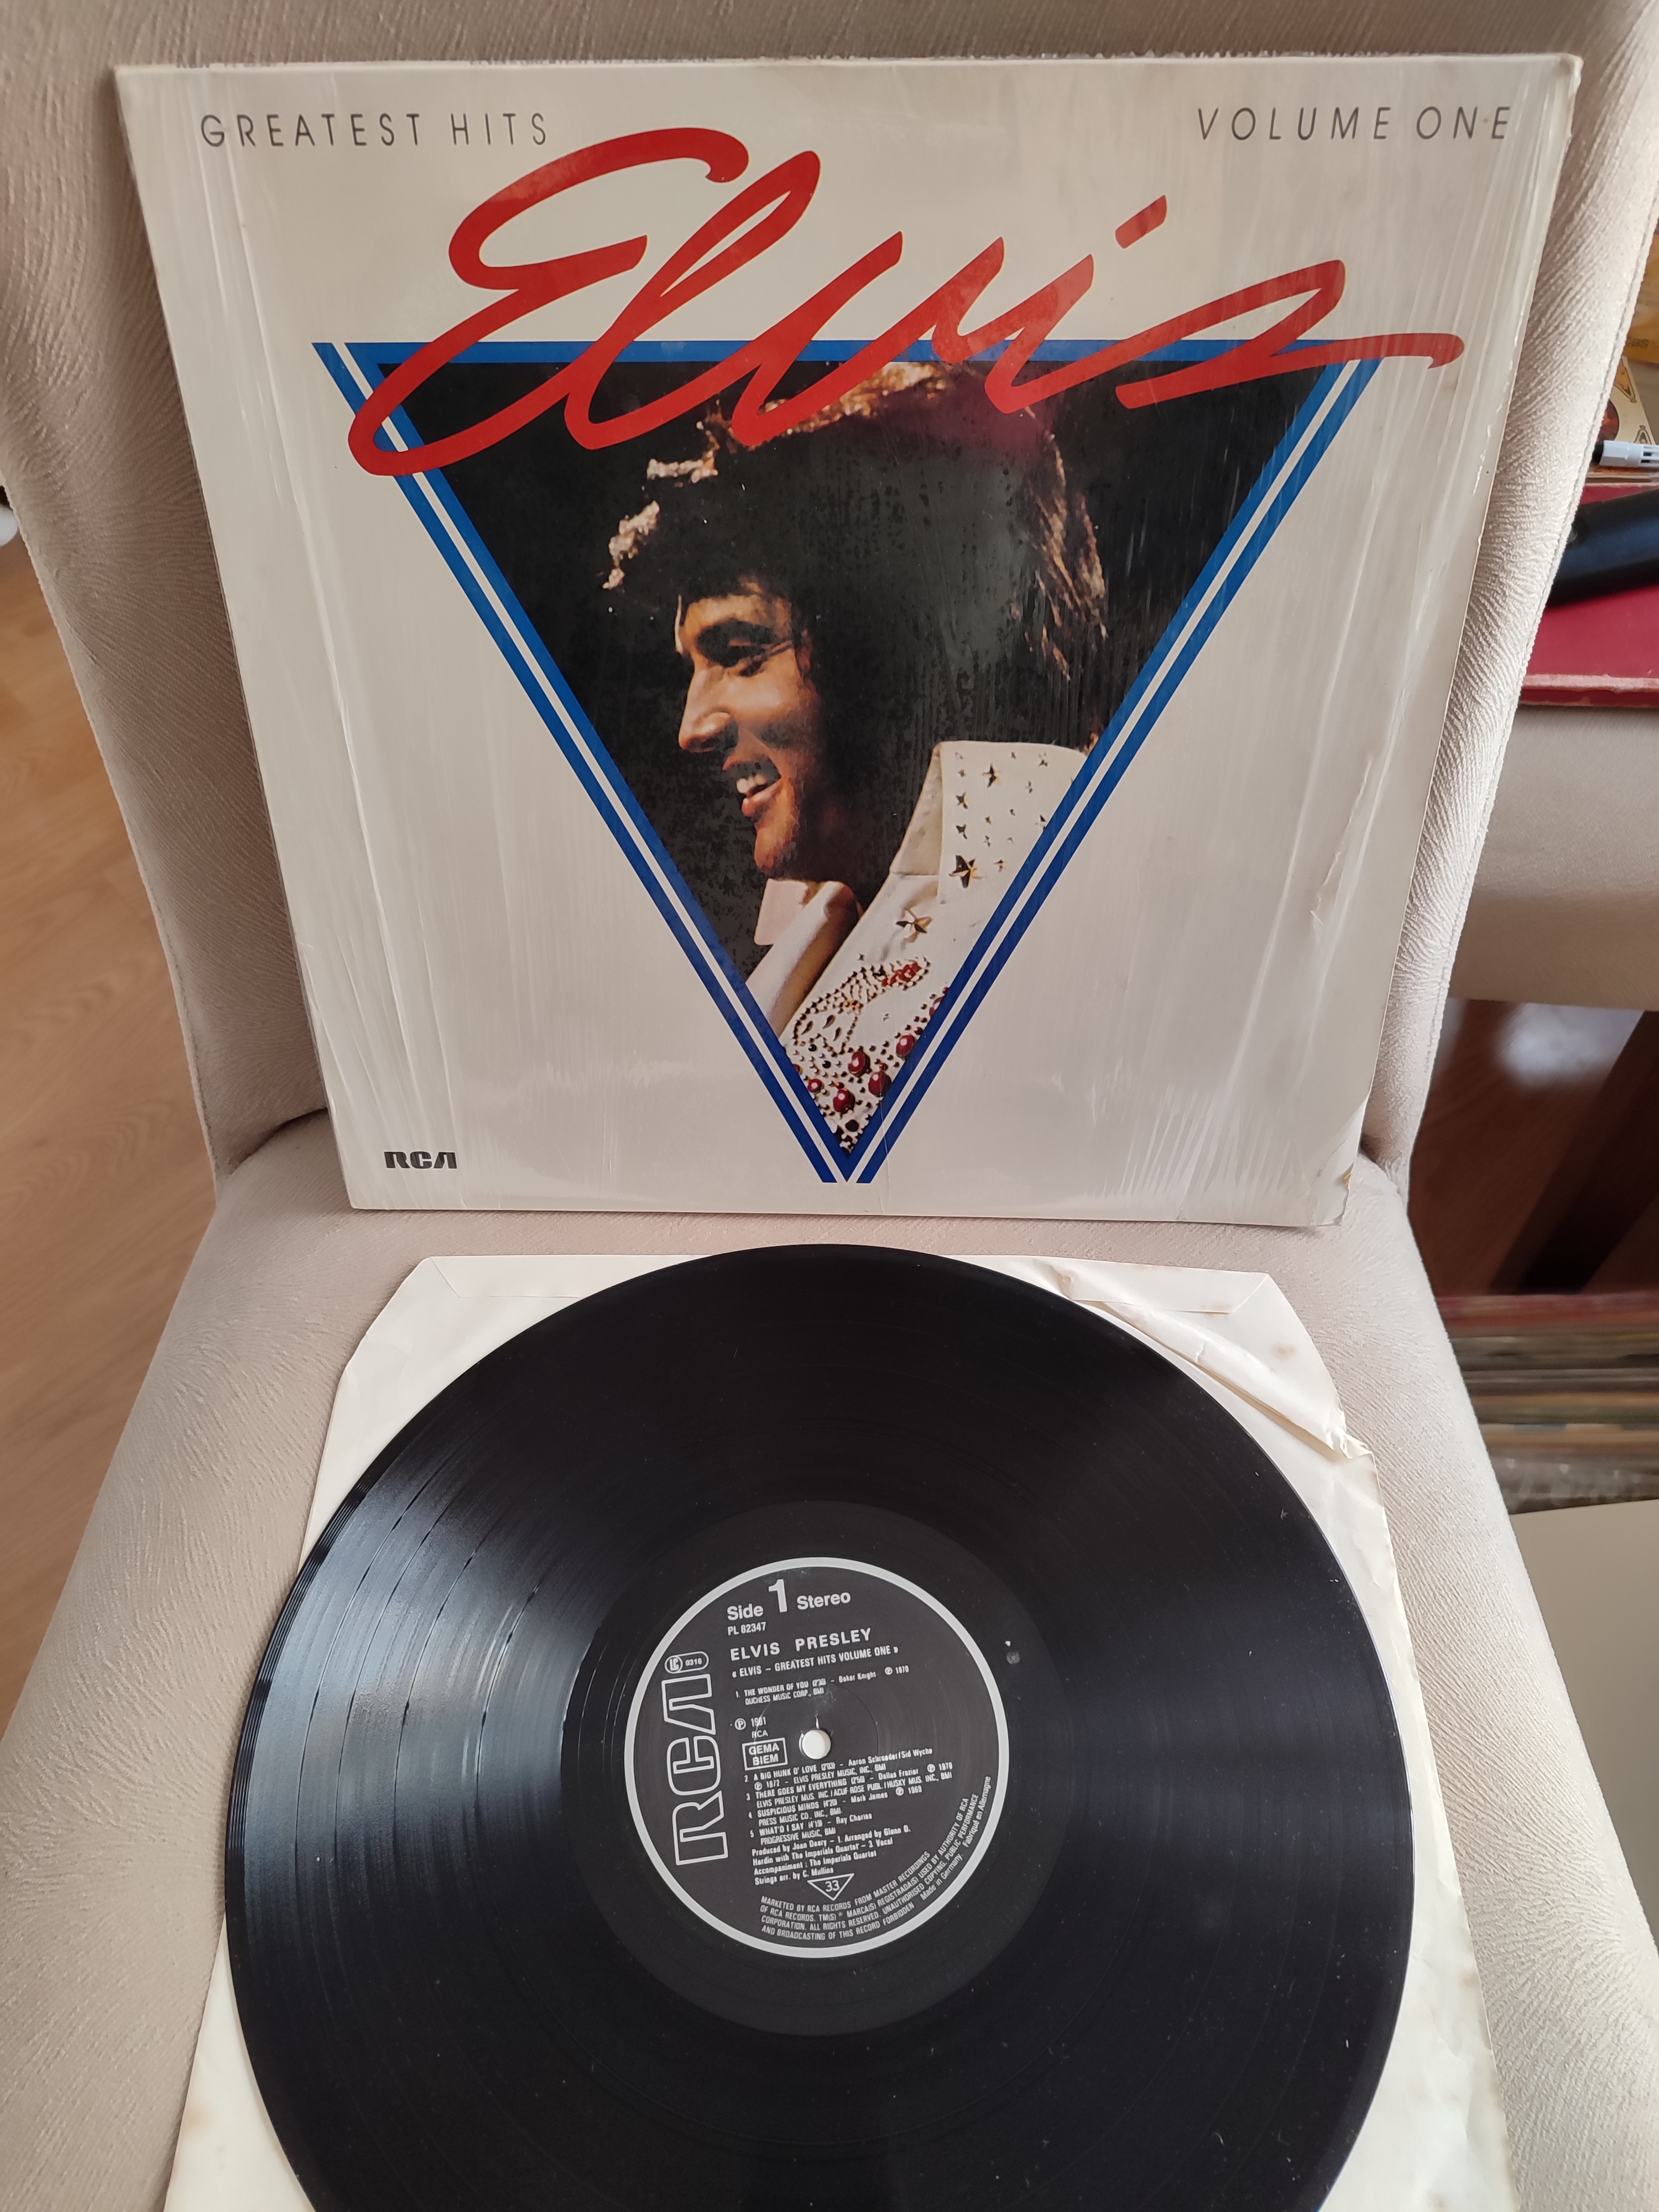 ELVIS PRESLEY - Greatest Hits Volume One - Almanya 1983 Basım Albüm - 33 lük LP Plak 2. el